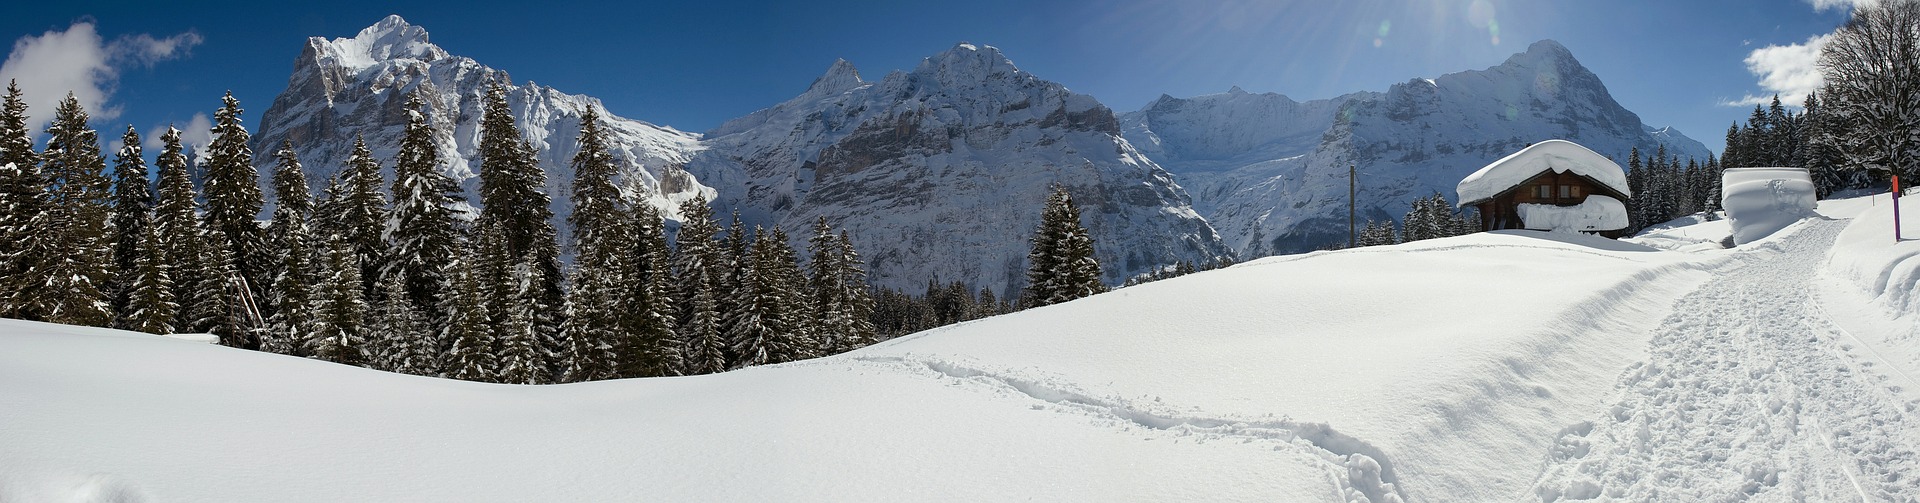 Skigebiete Schweiz Top 14 - für deinen perfekten Skiurlaub